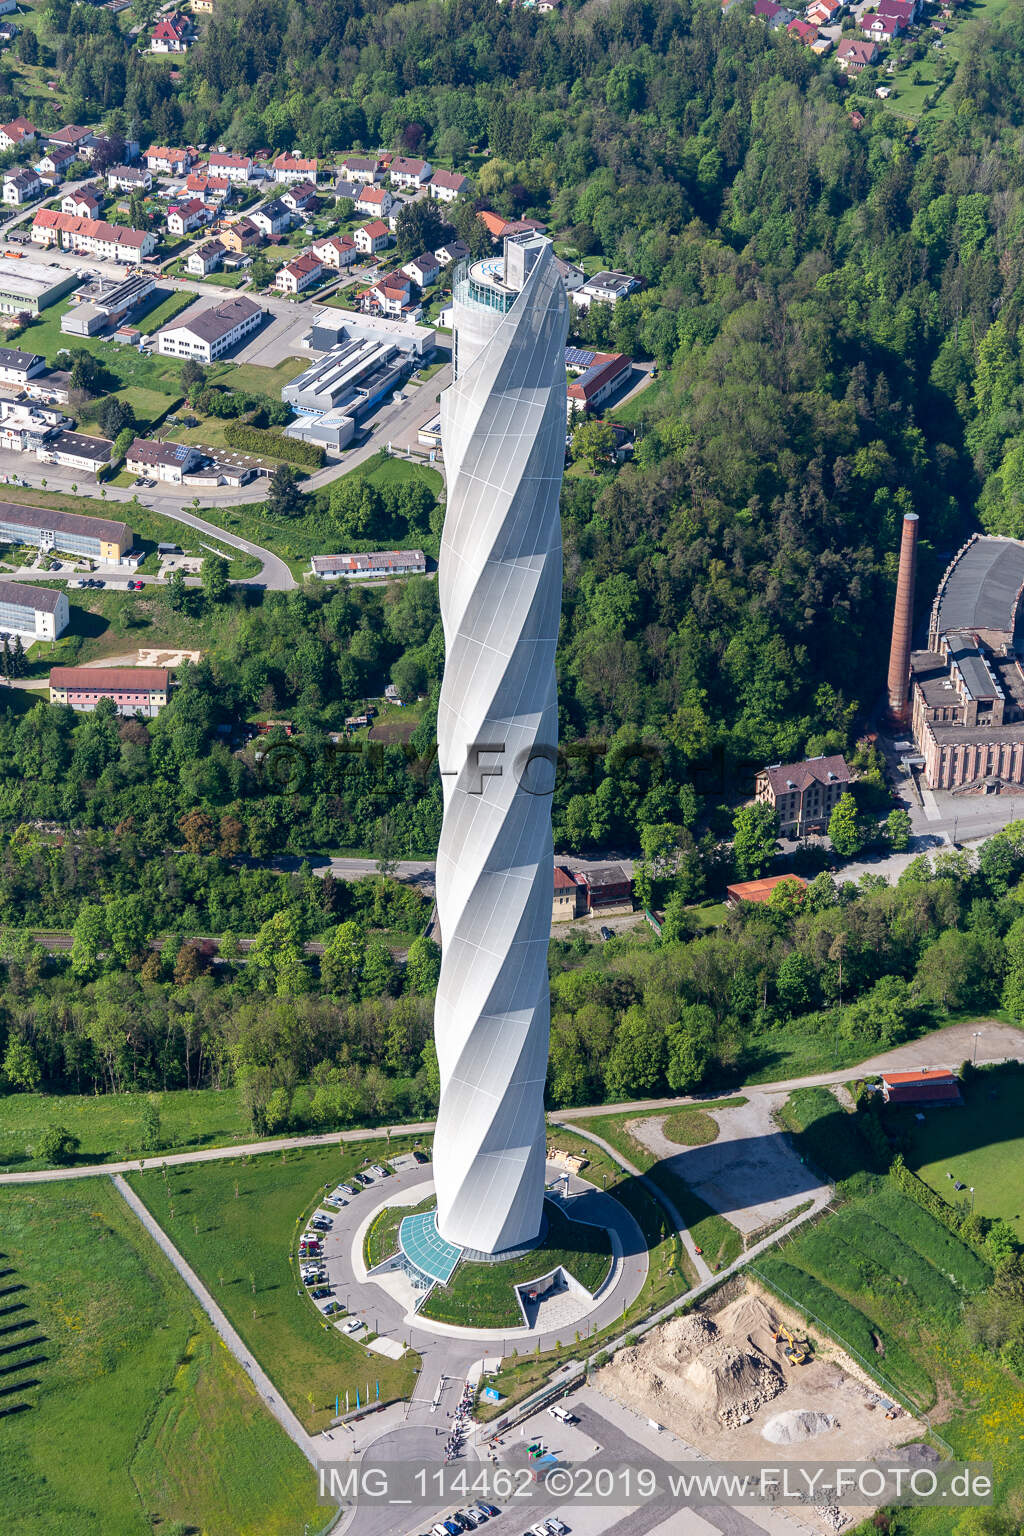 Tour d'essai Thyssenkrupp pour ascenseurs express à Berner Feld. Le nouveau point de repère de la petite ville Rottweil est actuellement la structure la plus haute à Rottweil dans le département Bade-Wurtemberg, Allemagne d'en haut